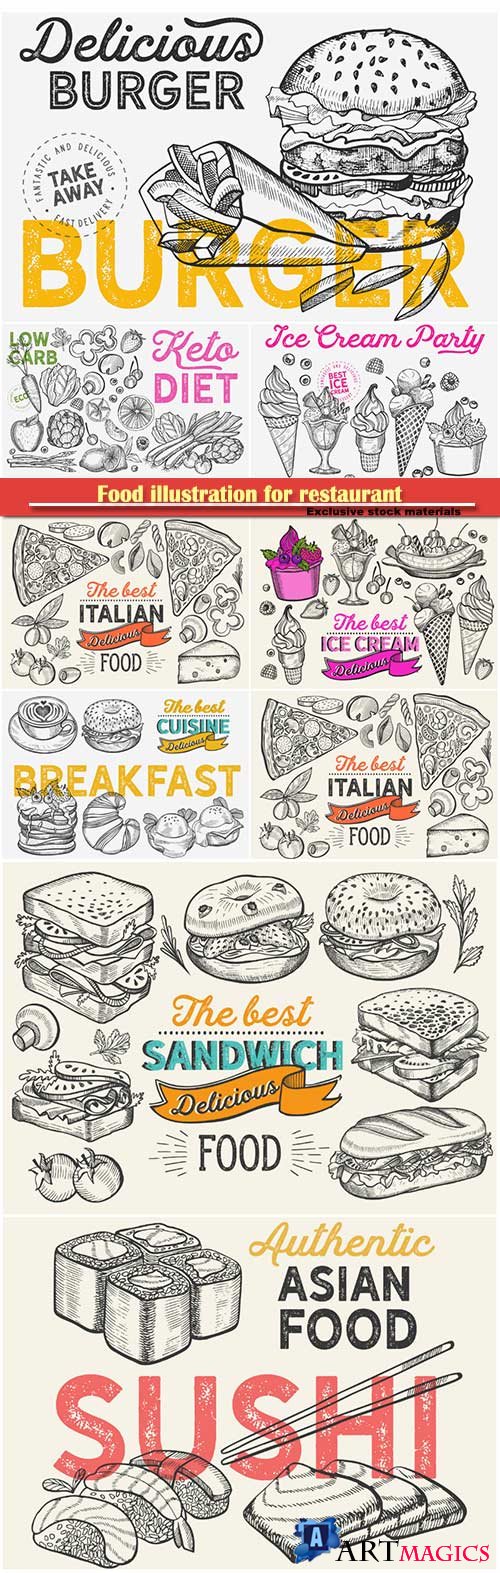 Food illustration for restaurant on vintage background